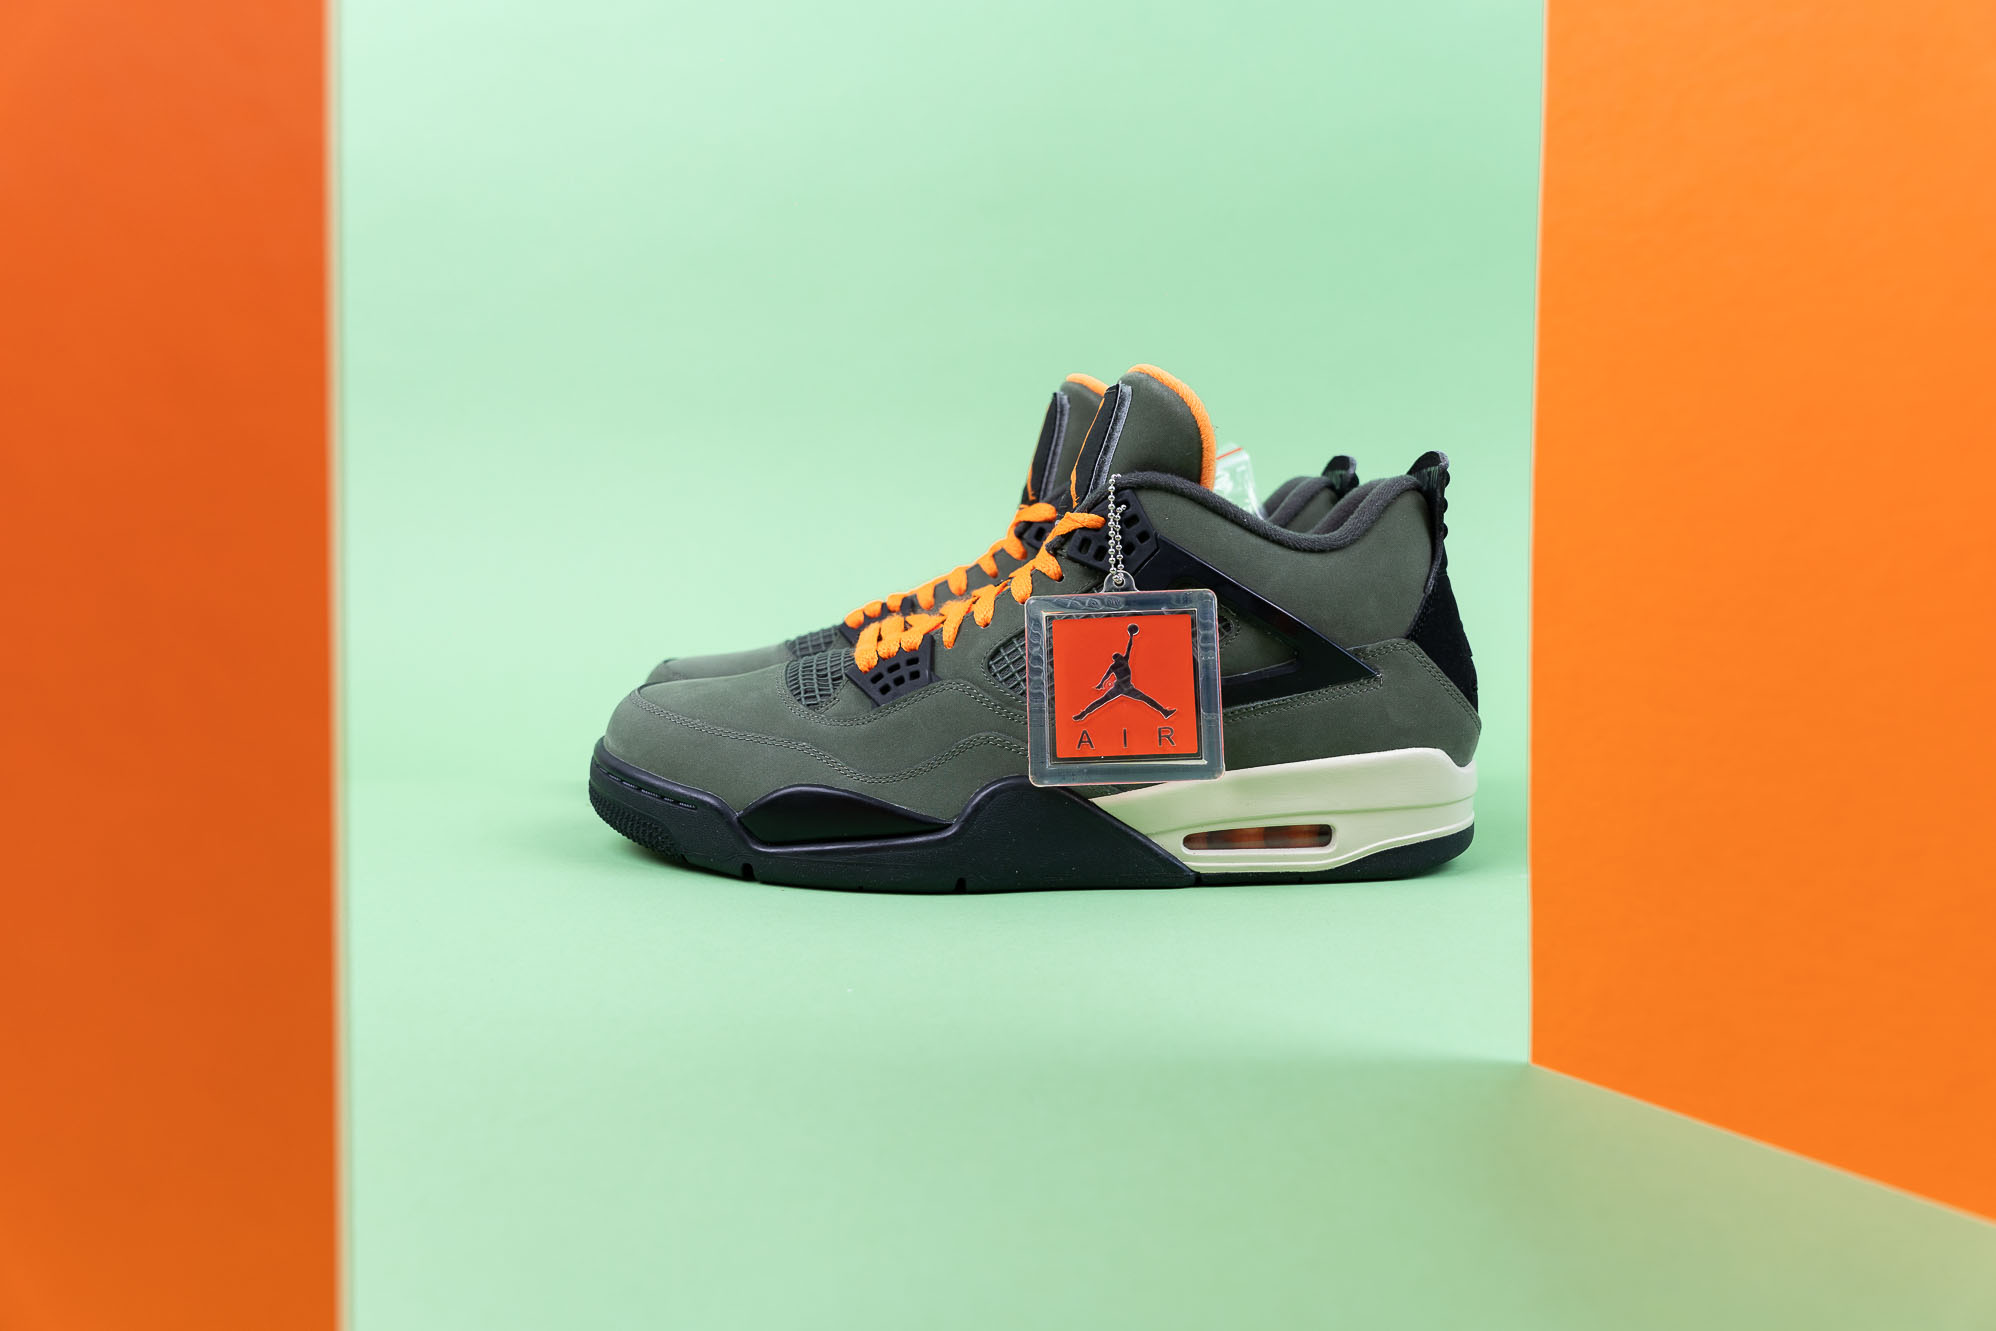 UNDEFEATED x Air Jordan 4: Einer der teuersten Jordan Schuhe jemals